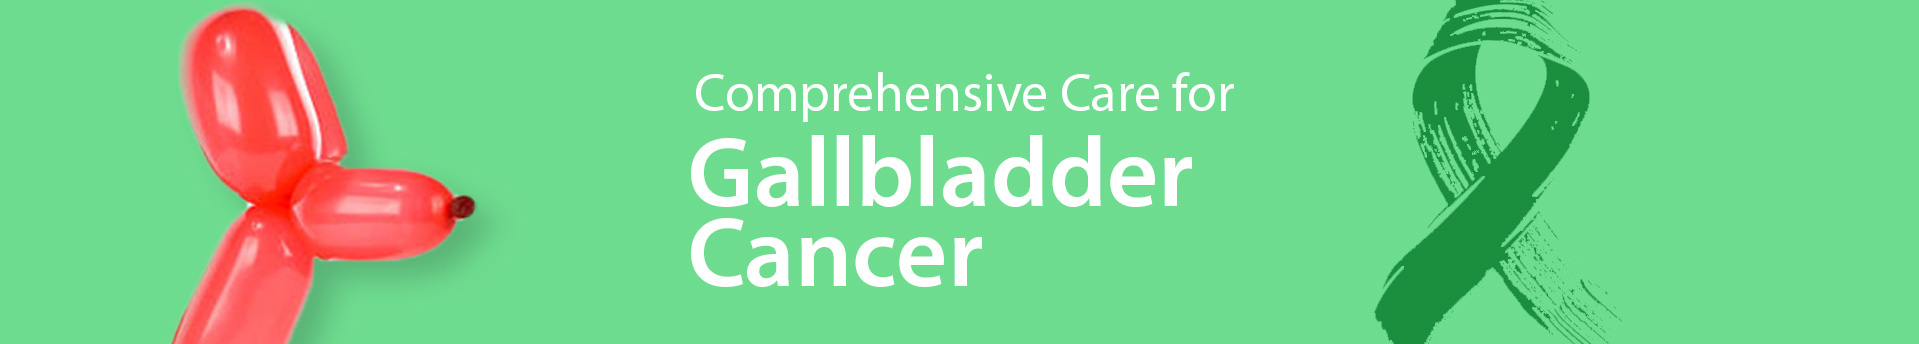 MSH Gallbladder Cancer